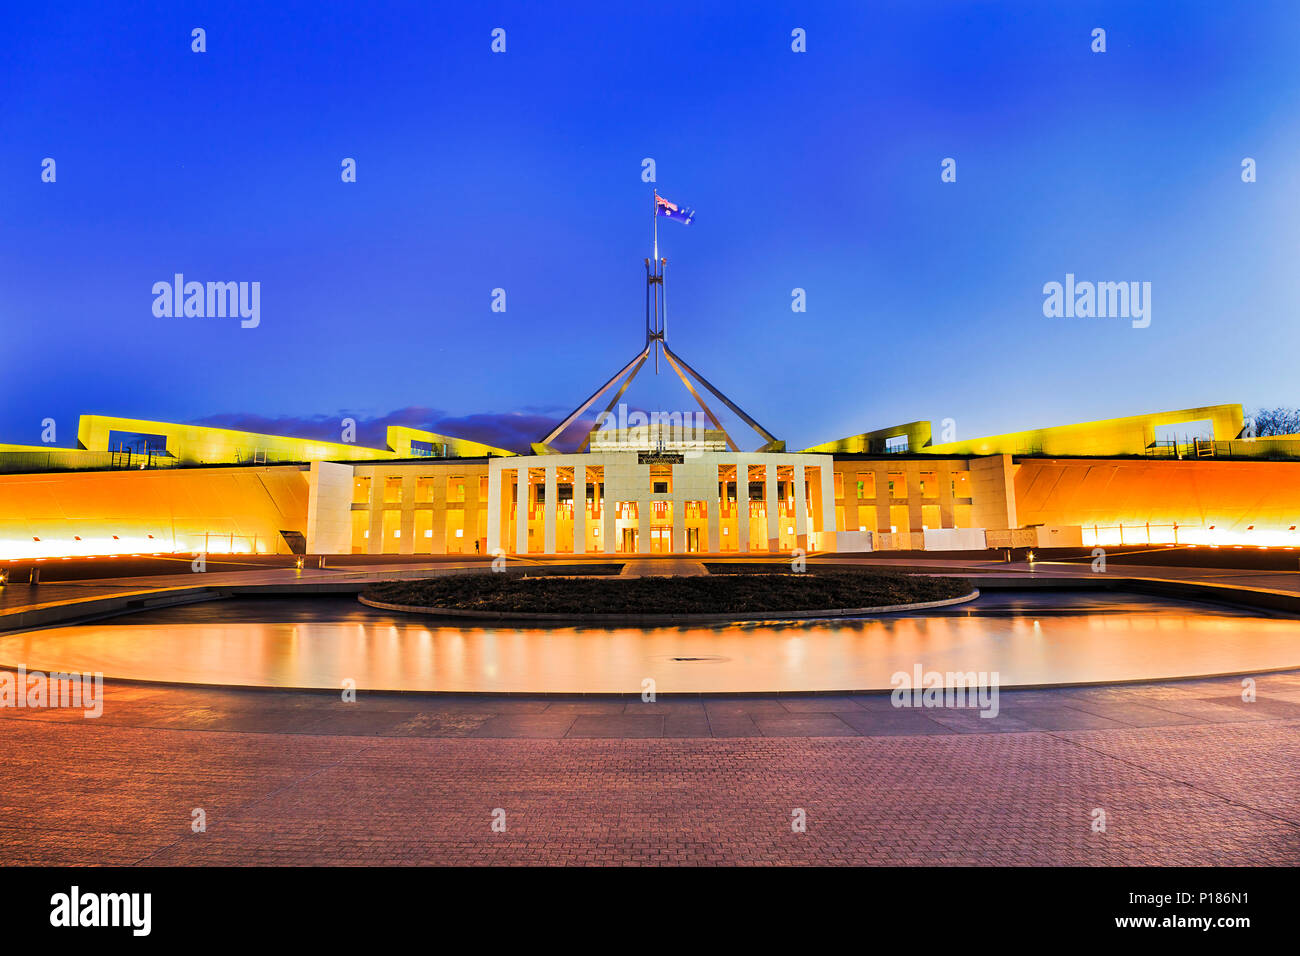 Wasser Pool vor neuen Parliament House in Canberra auf dem Capitol Hill bei Sonnenuntergang reflektieren helle Beleuchtung in fliessend Wasser. Stockfoto